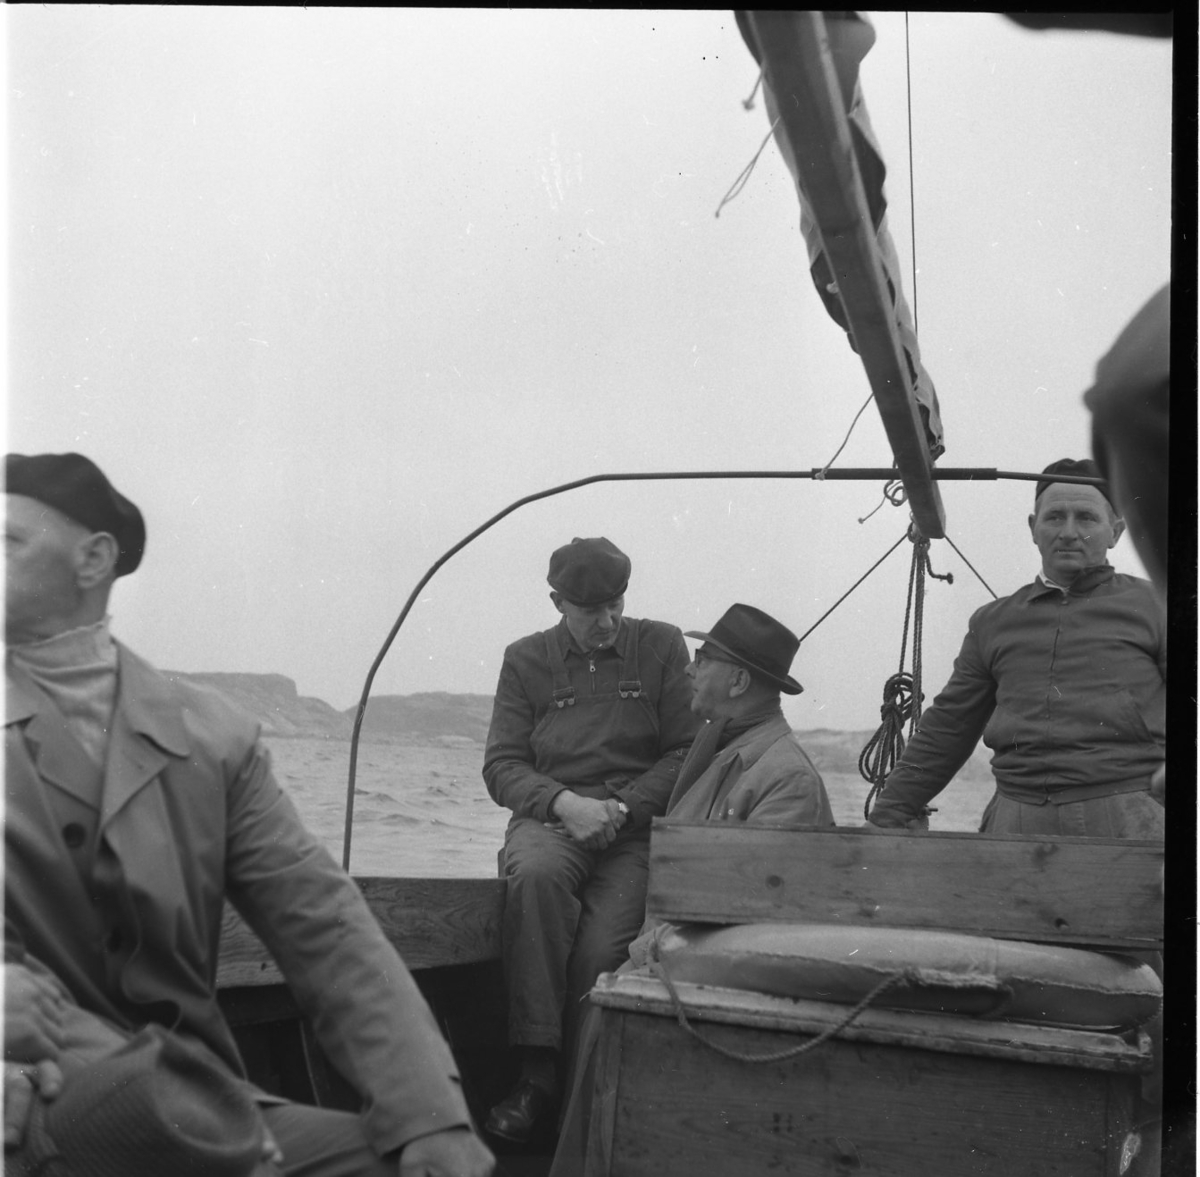 Fyra män i en segelbåt med inombordare. Mannen i hatt och ljus rock i aktern är troligen Osse Gustafsson.